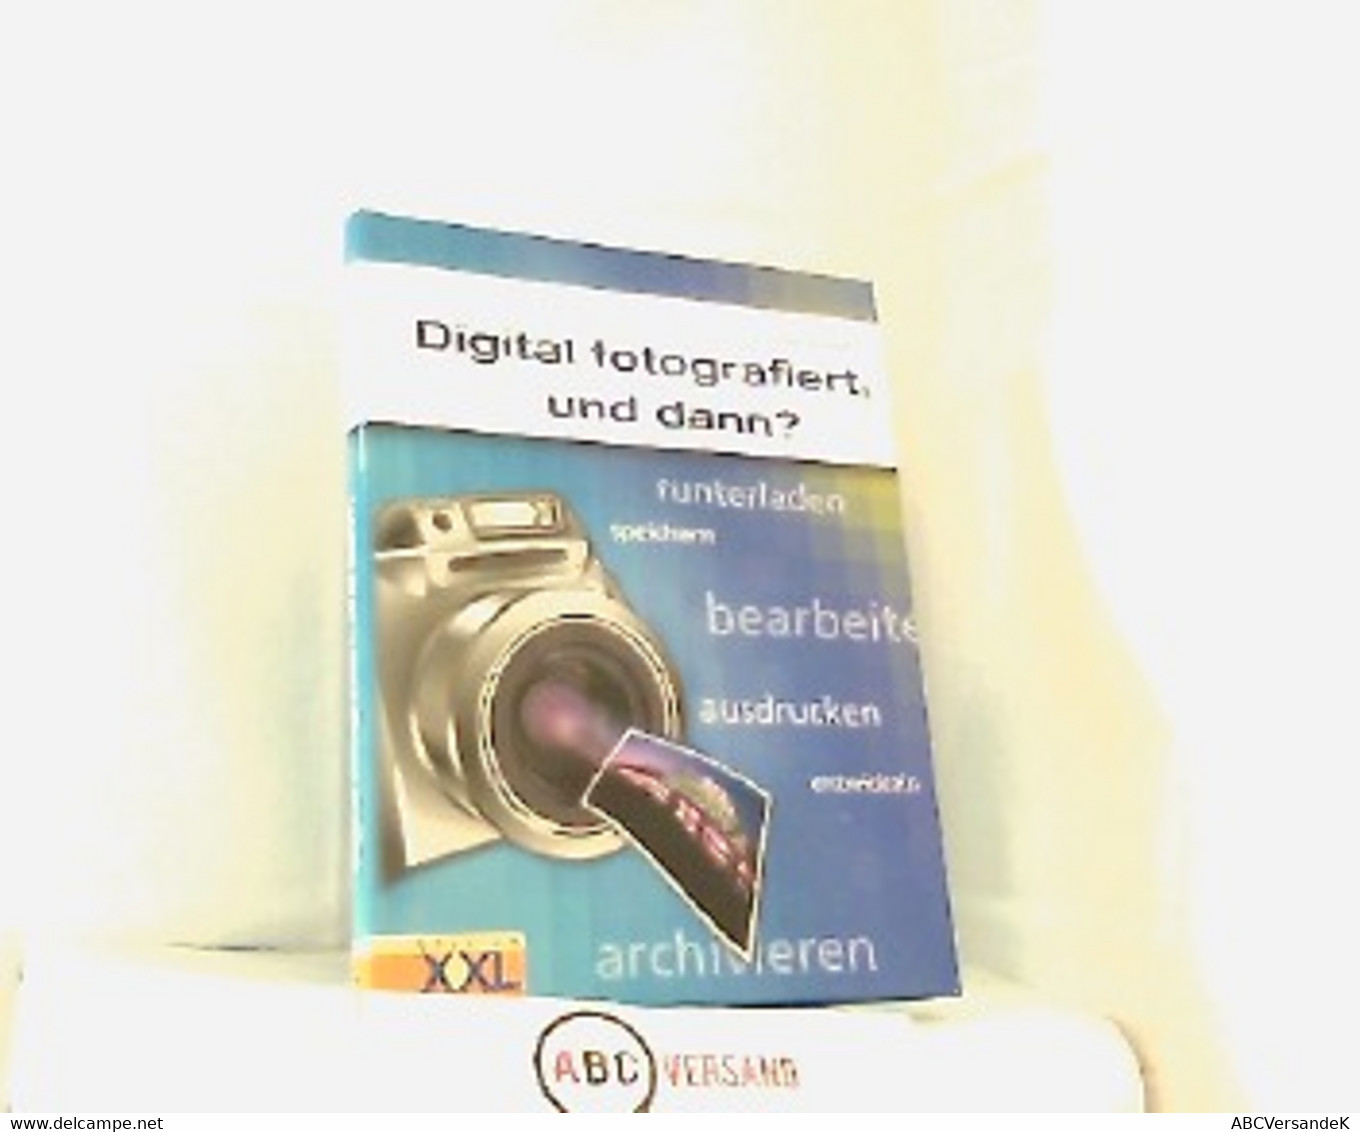 Digital Fotografiert, Und Dann? Runterladen, Speichern, Bearbeiten, Ausdrucken, Entwickeln, Archivieren. - Photographie